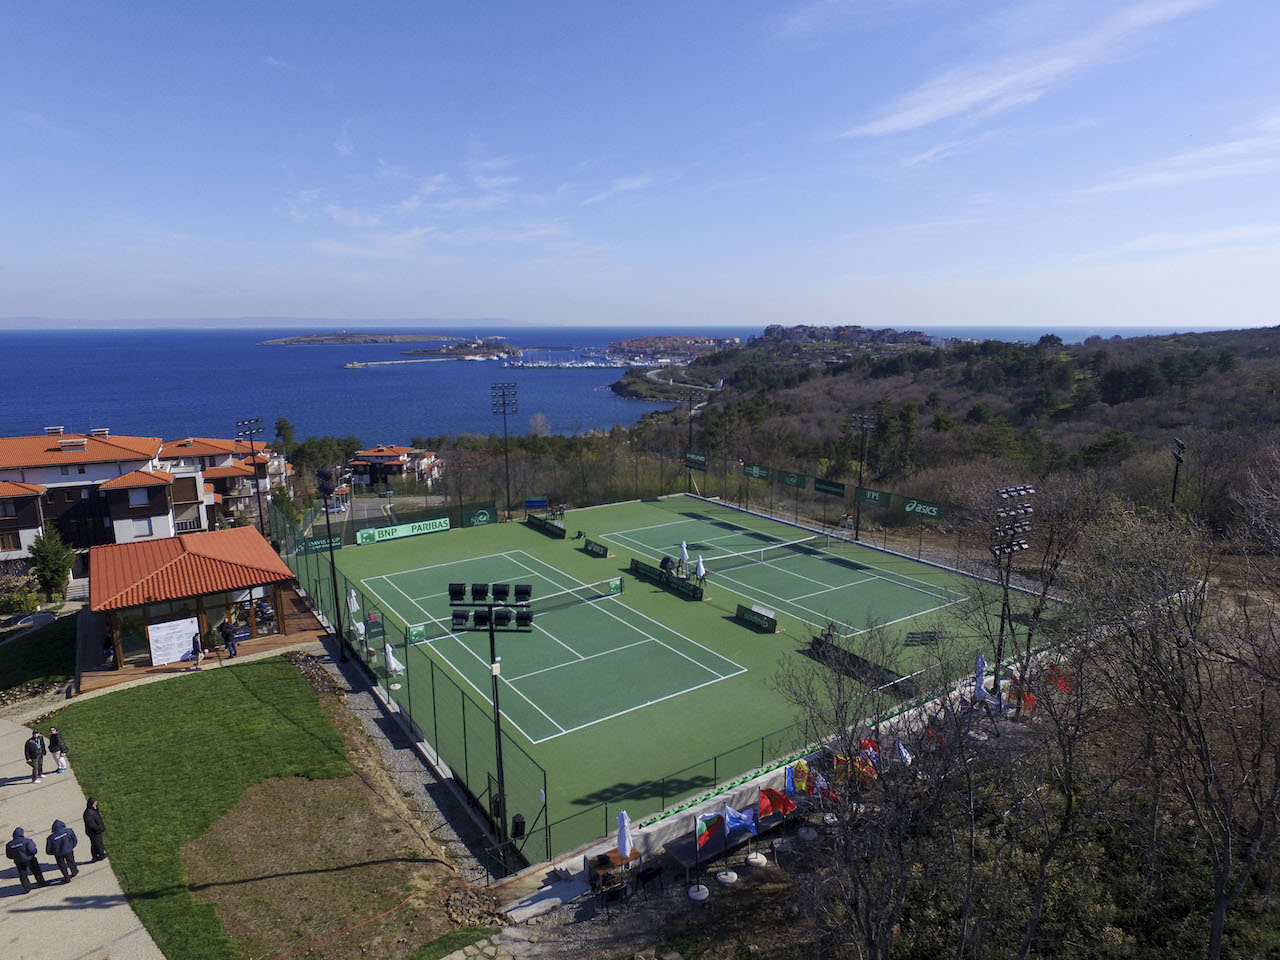 Започва детски турнир по тенис край морето 